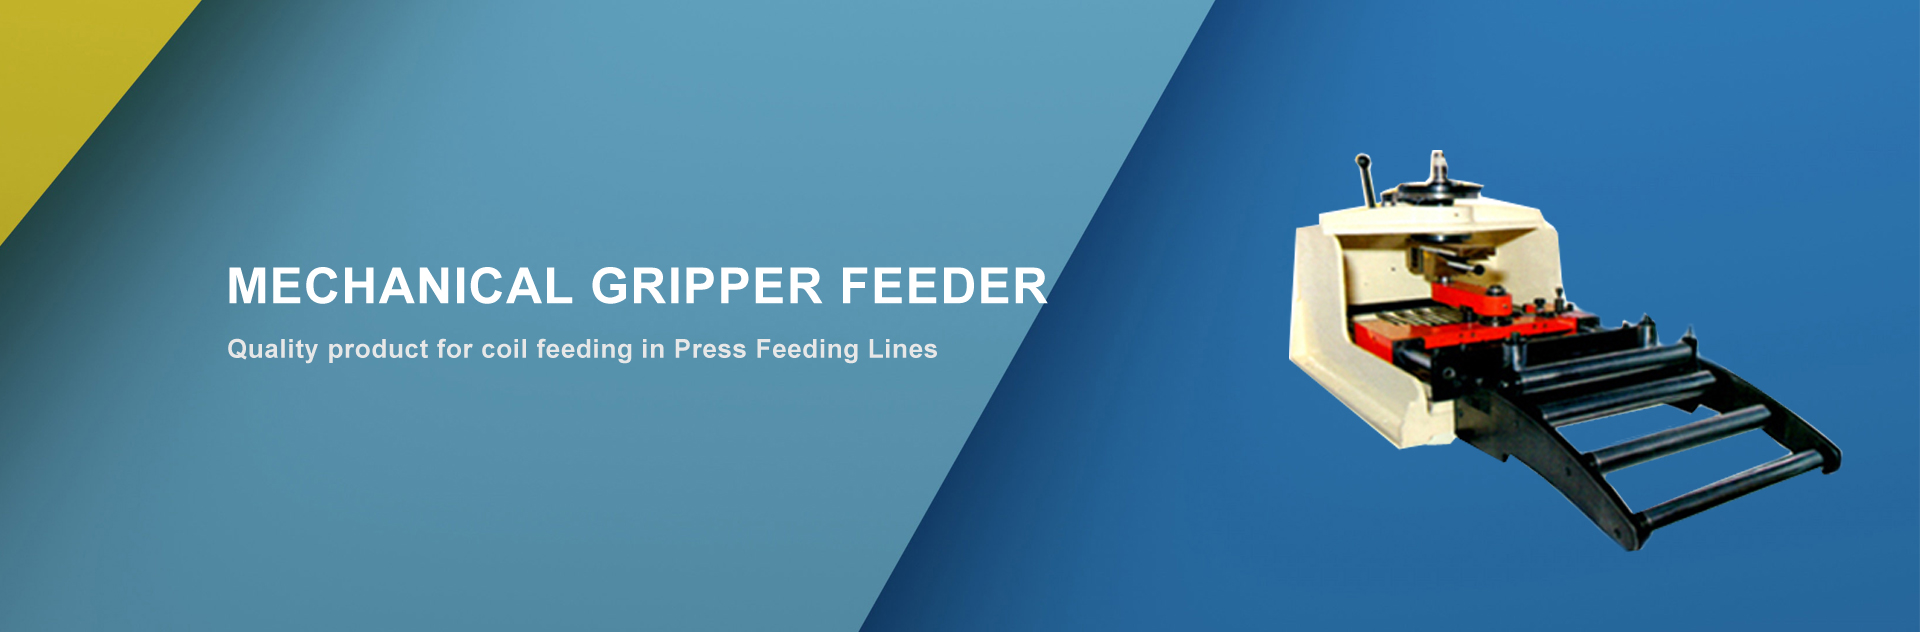 mechanical-gripper-feeder